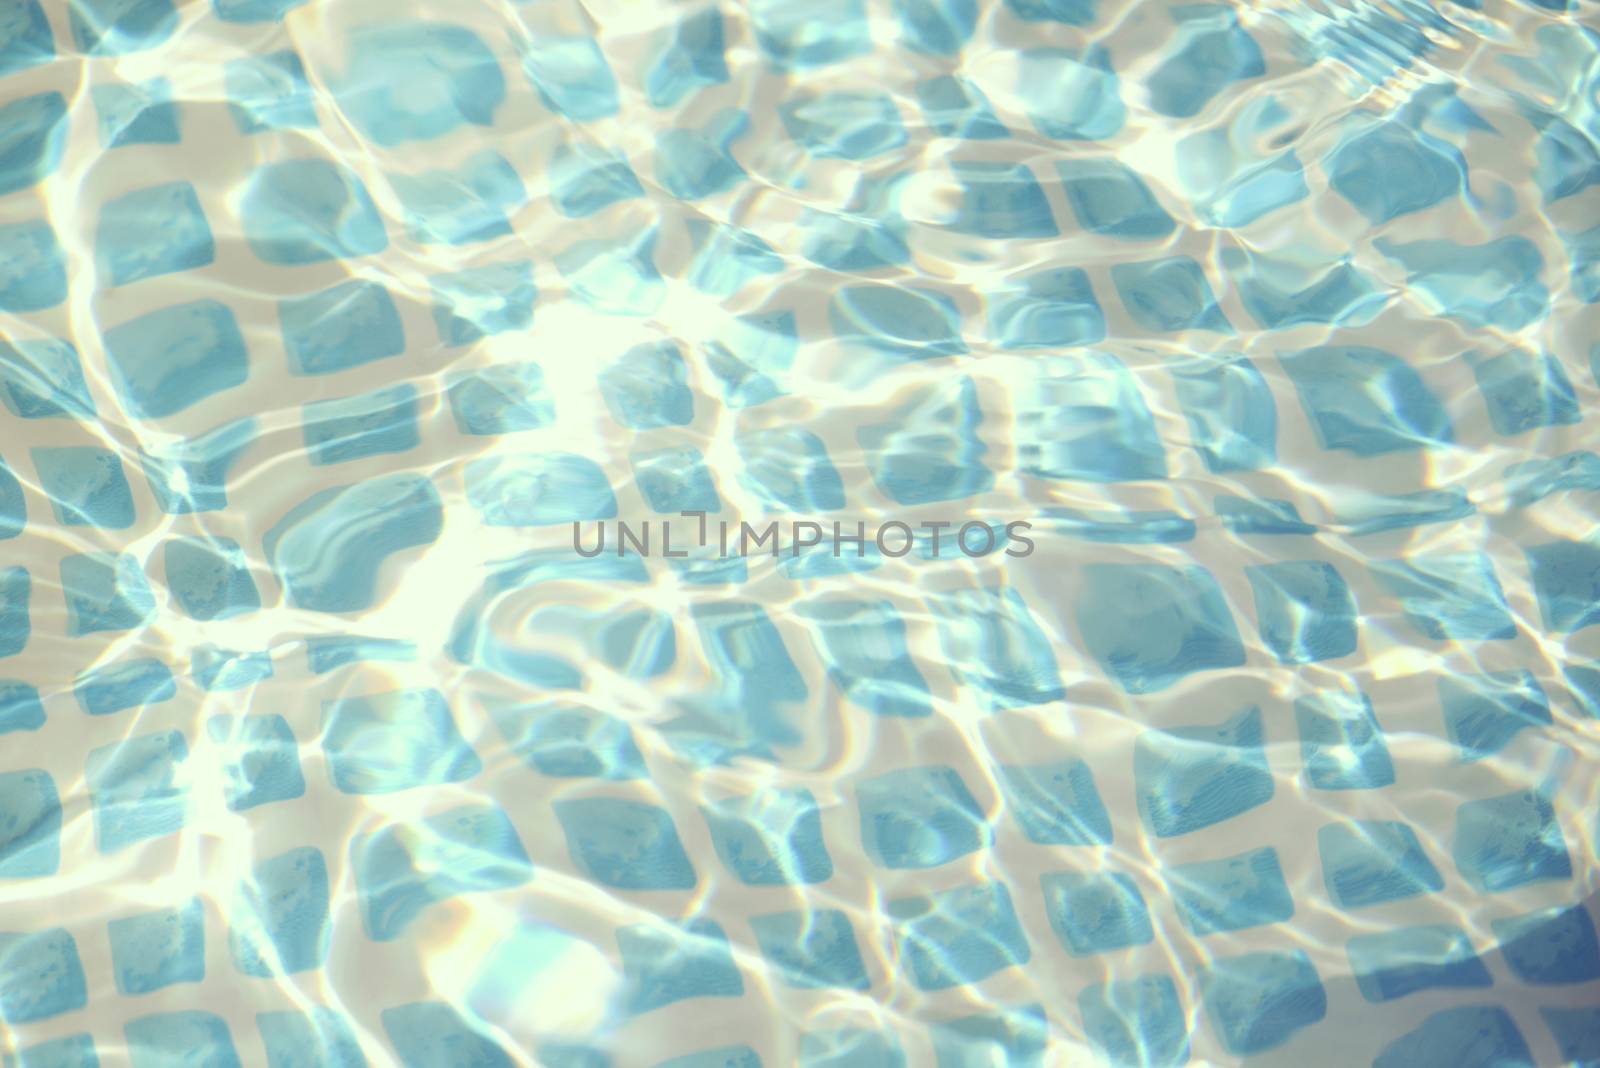 Vintage swimming pool texture by cienpies